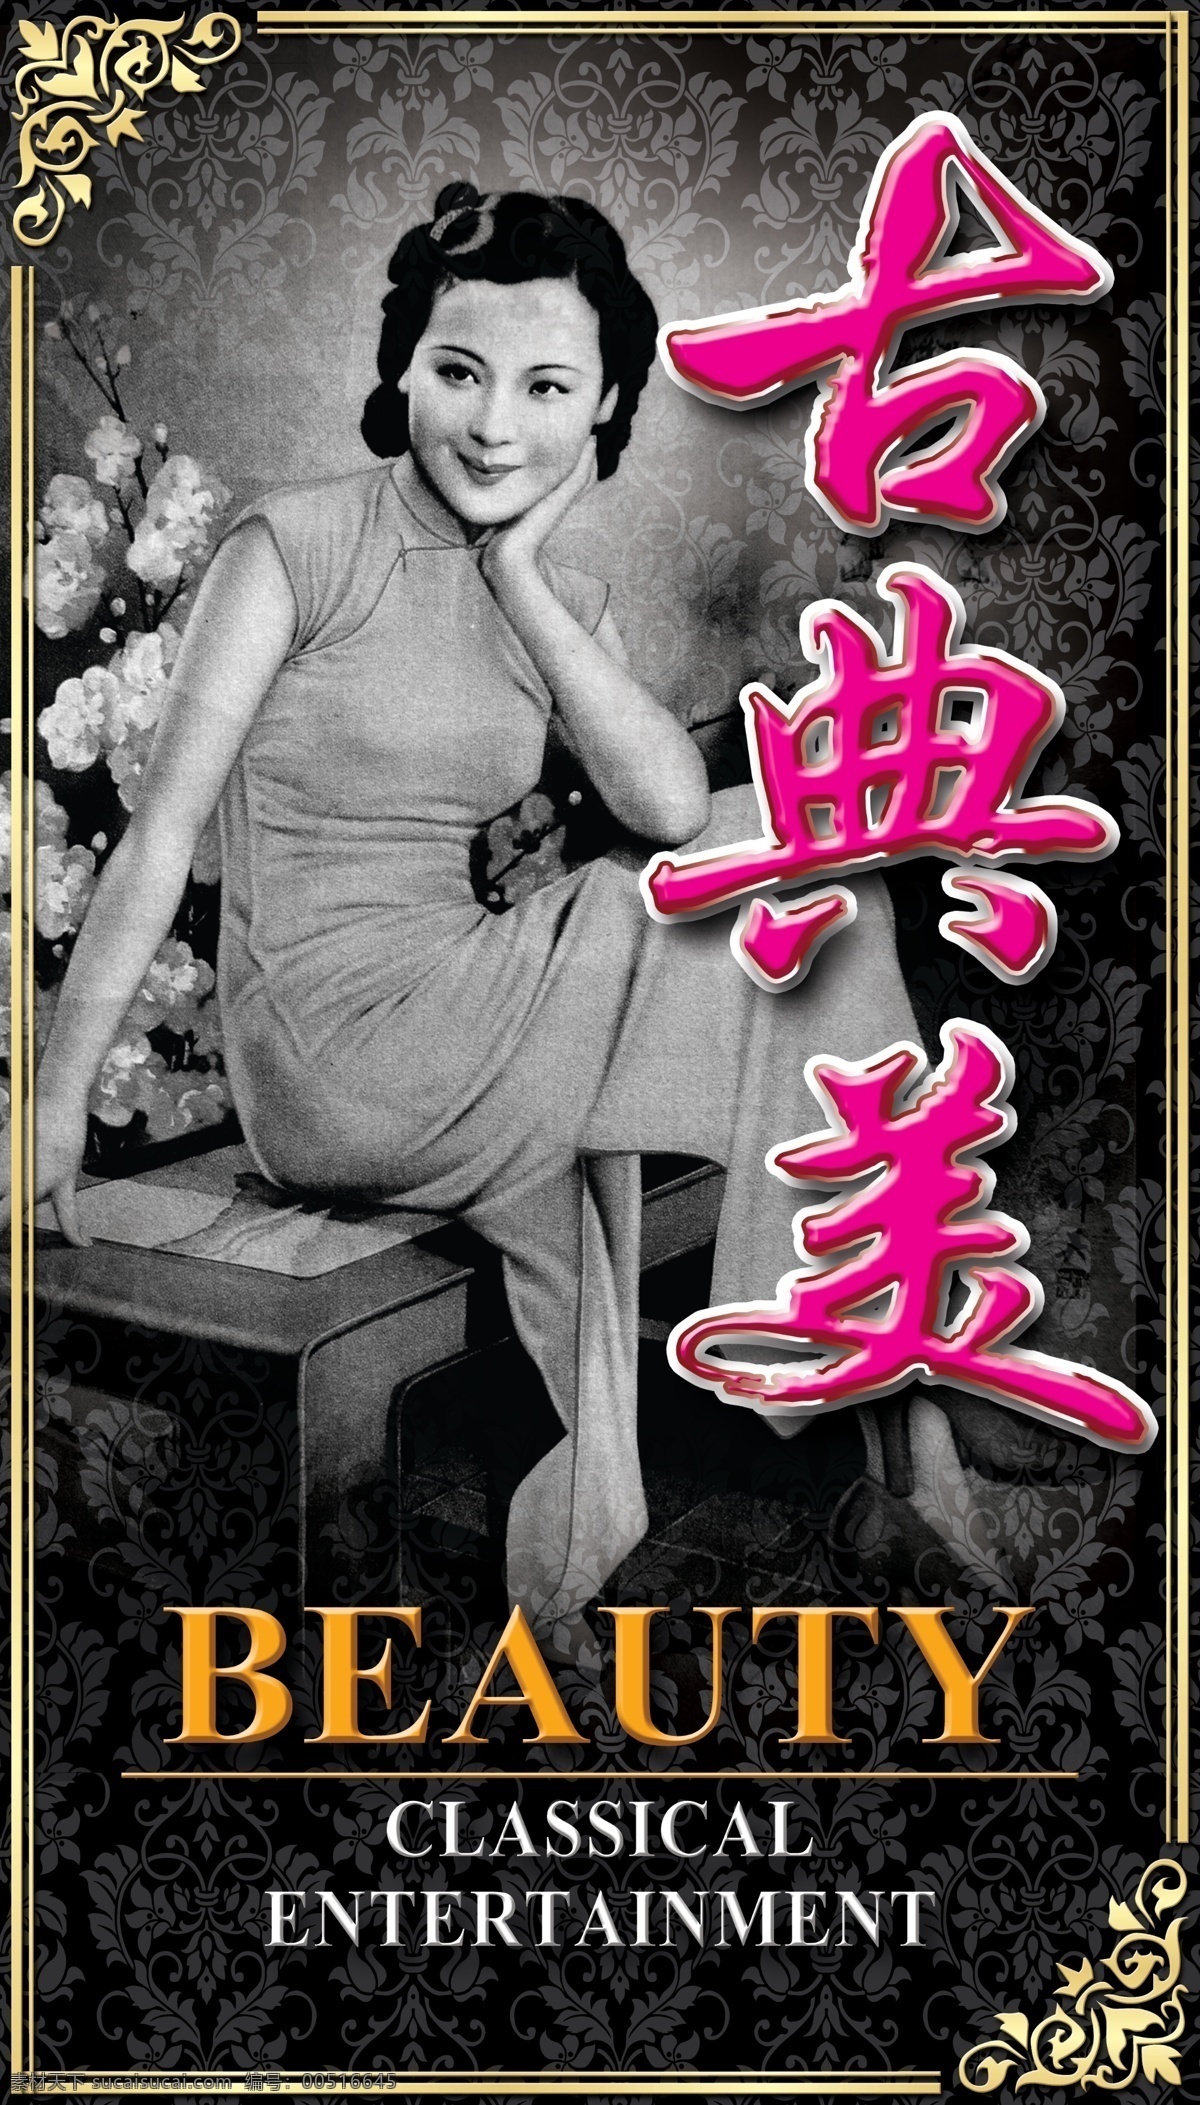 上海 年代 古典 美女 招牌 复古 高贵 古典美女 花纹 优雅 招牌设计 30年代 classic beauty signboard pattern 原创设计 其他原创设计